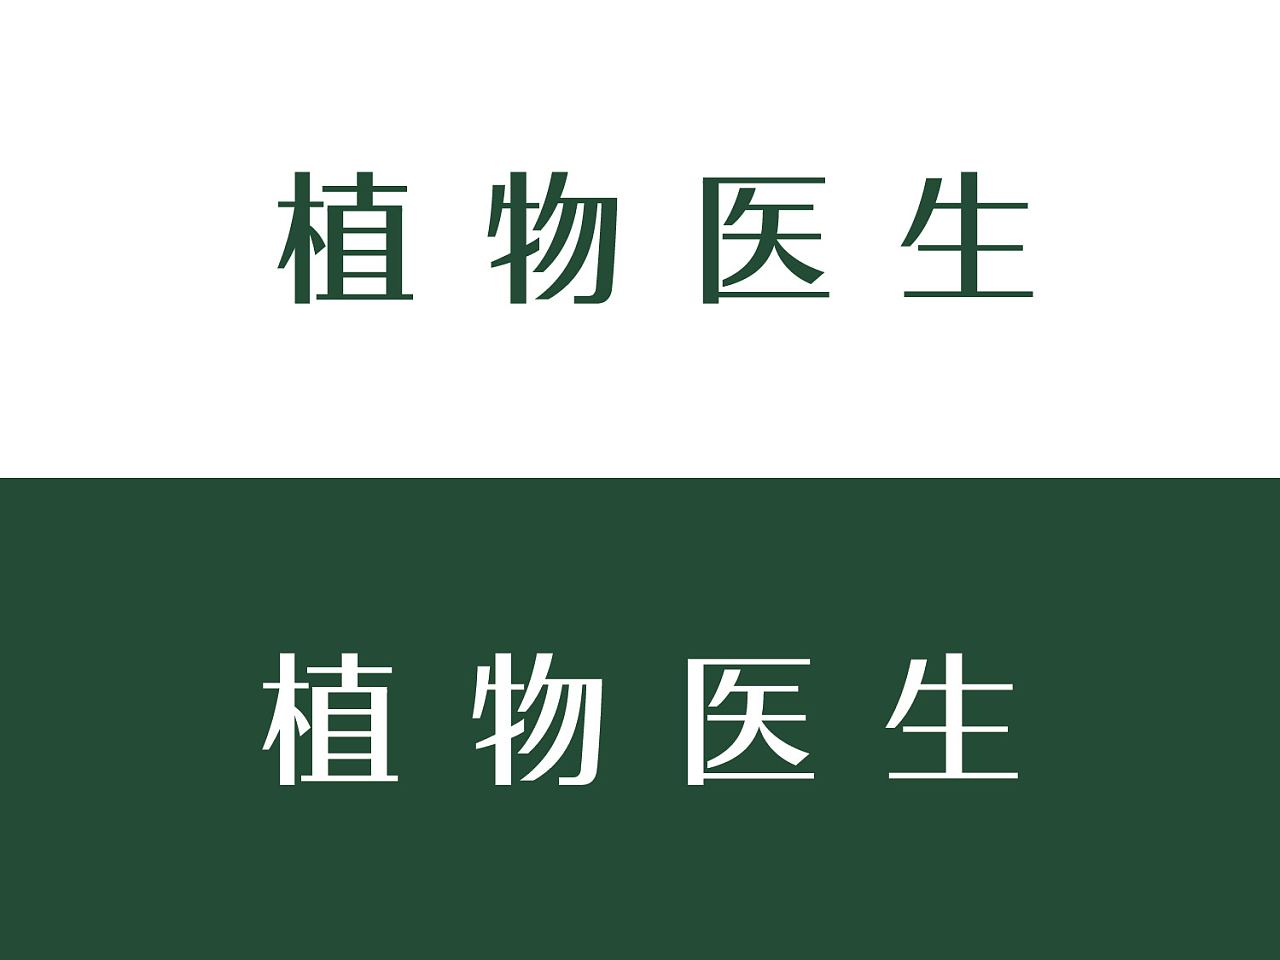 植物医生 logo设计